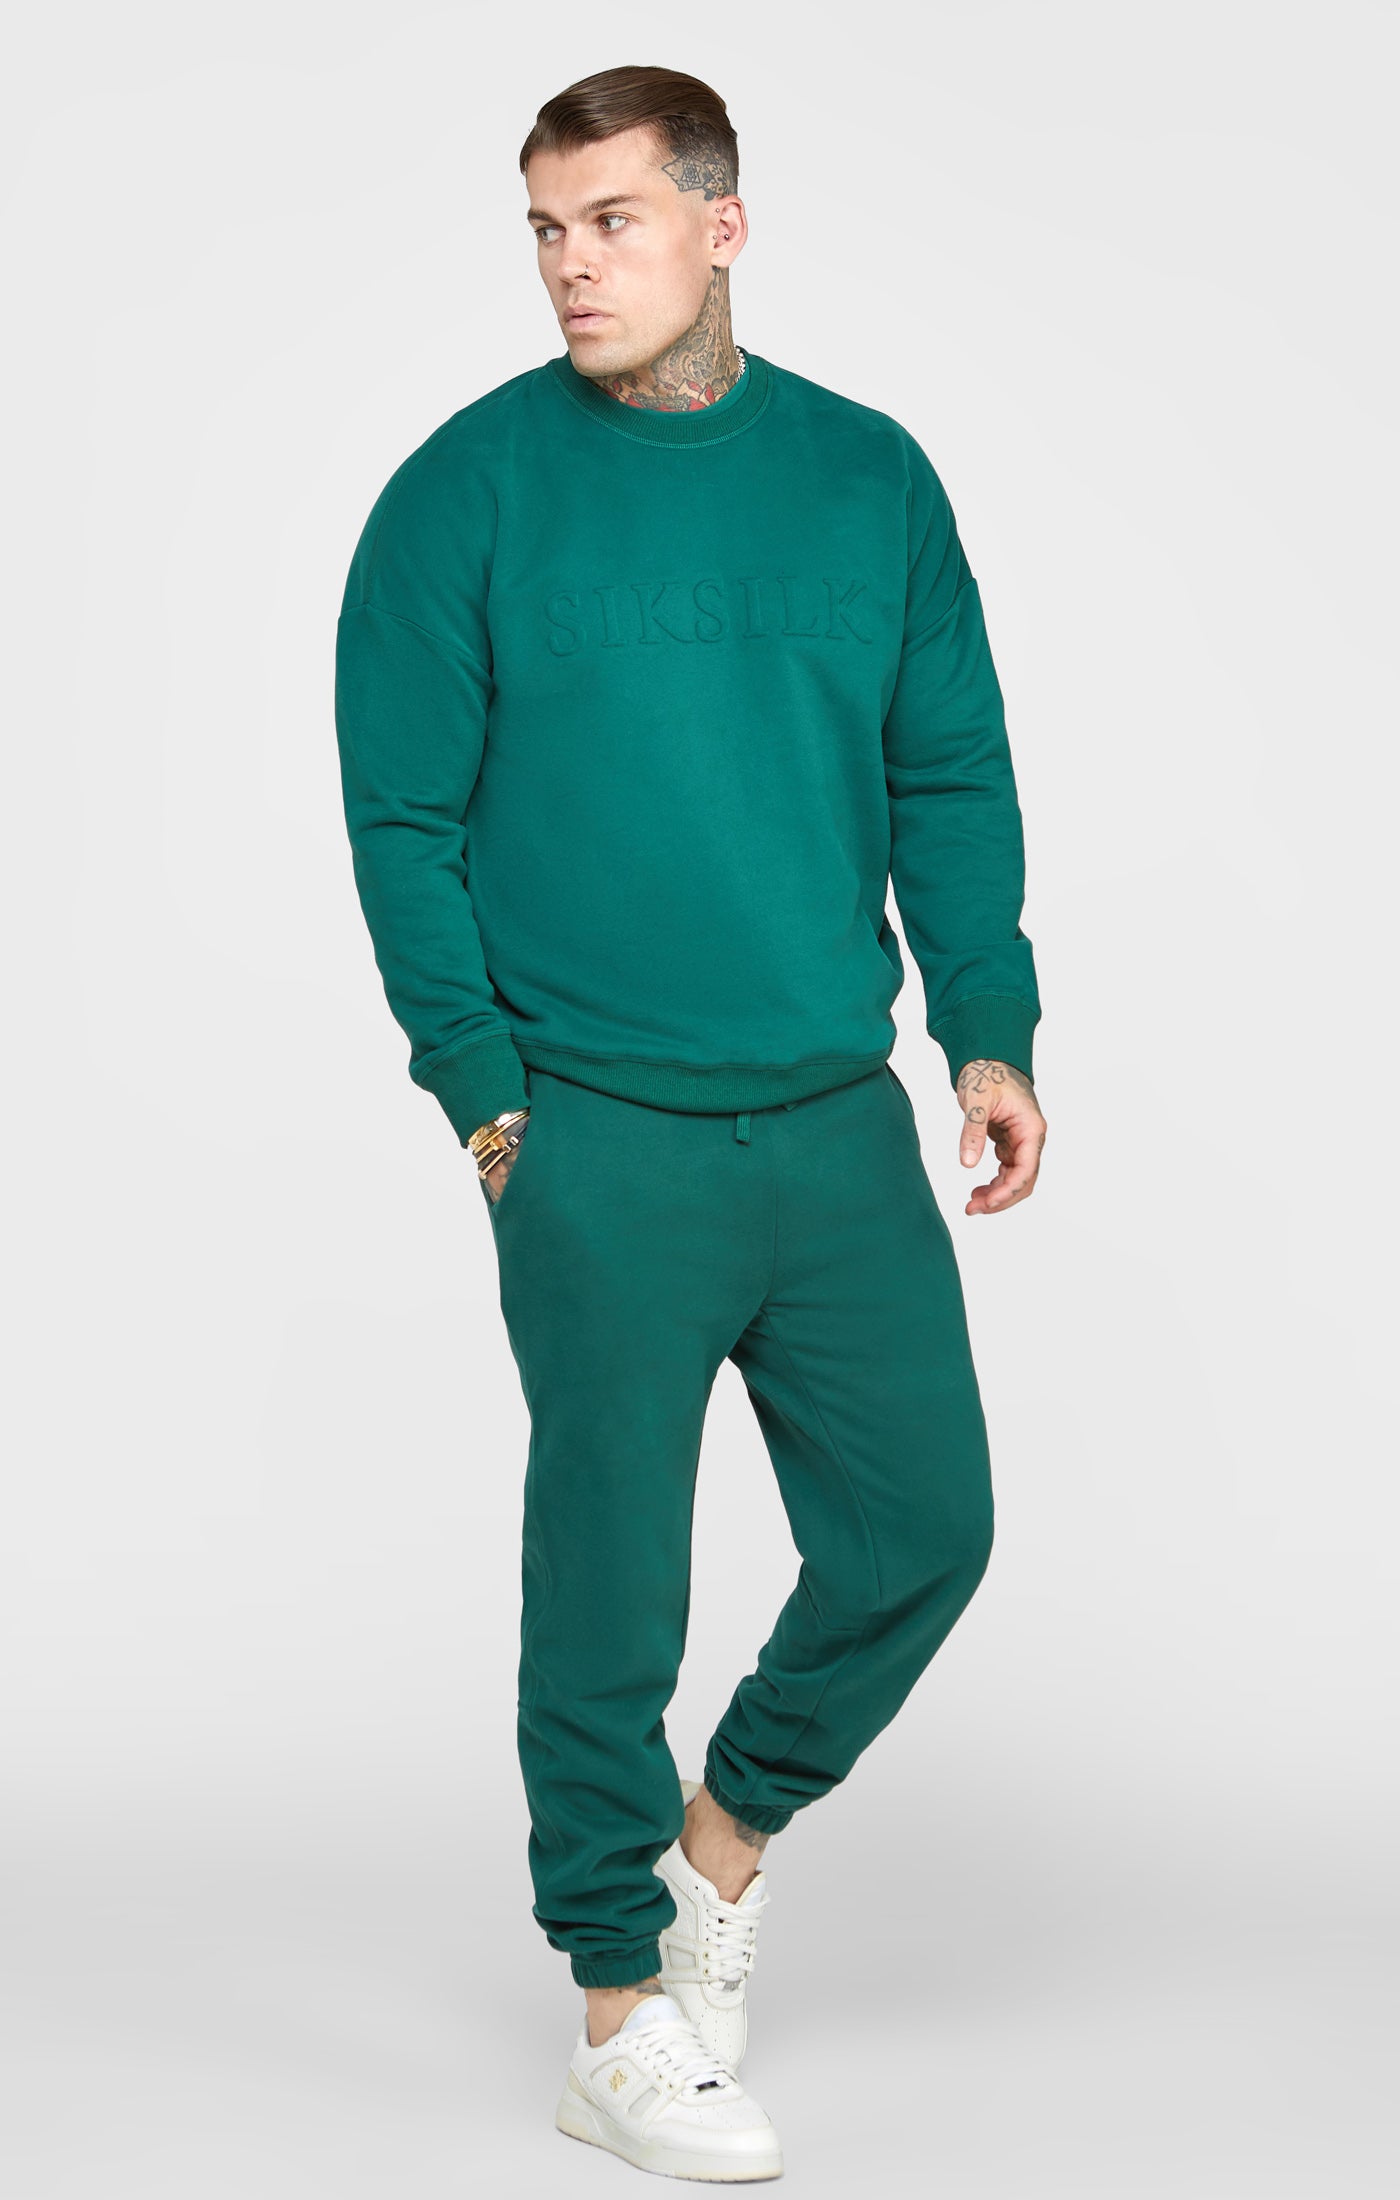 Grünes Sweatshirt mit Prägung (3)